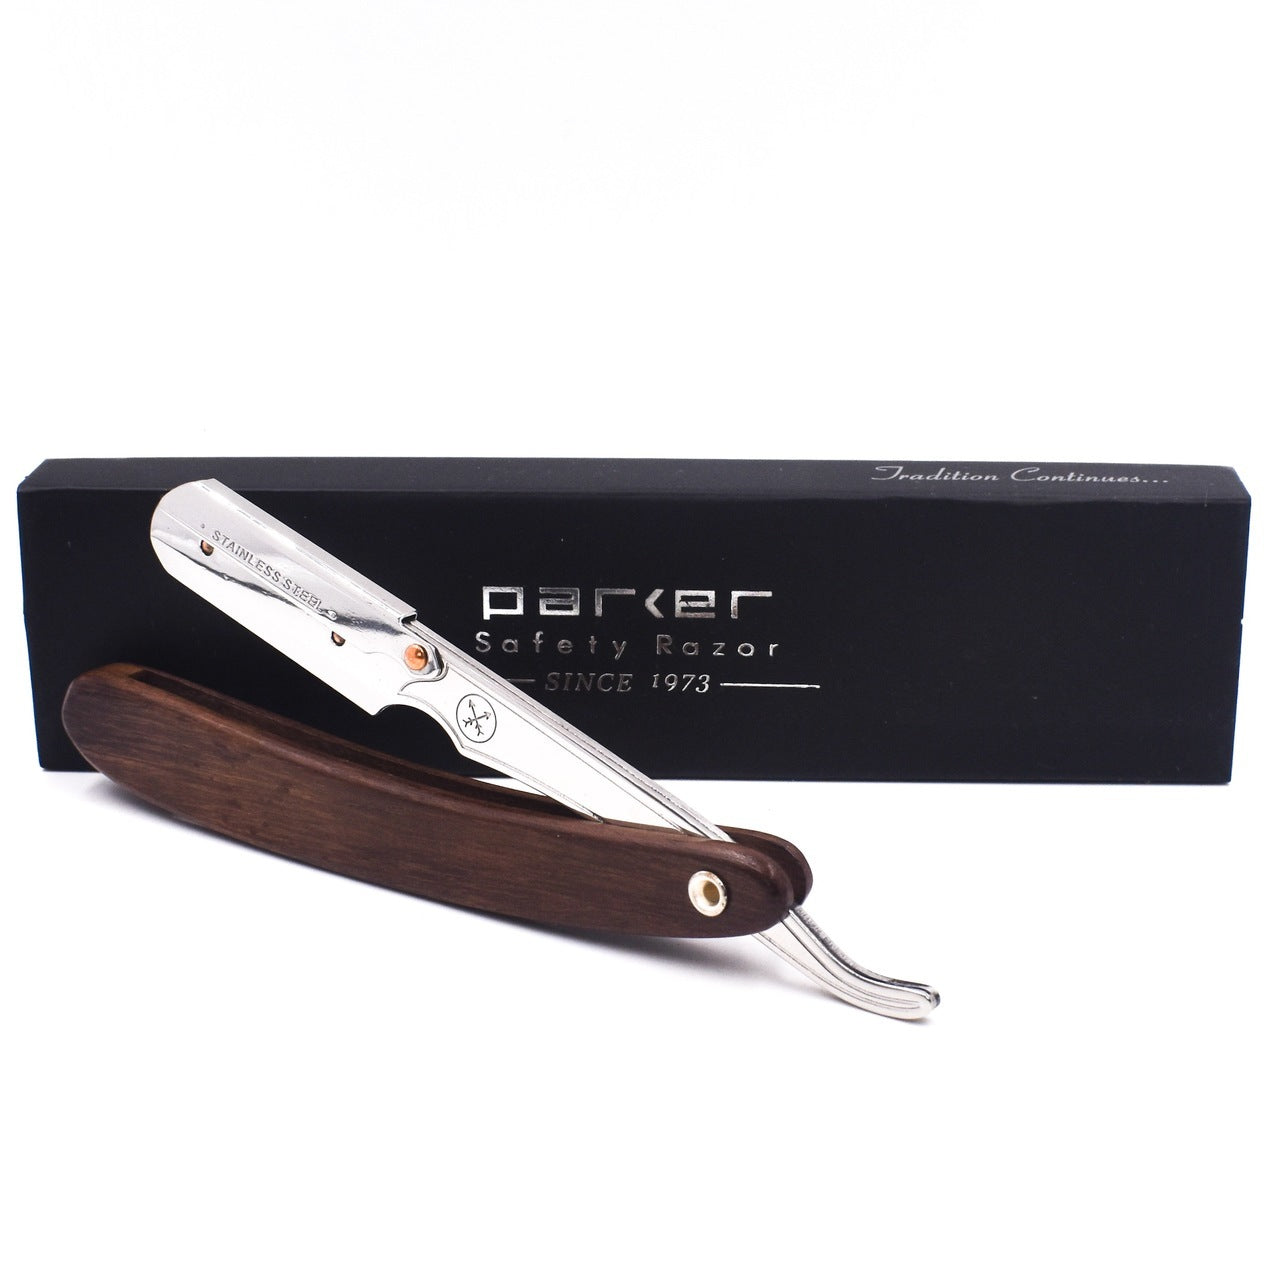 Dark Sheesham Wood Handle Clip Type Barber/Straight Razor